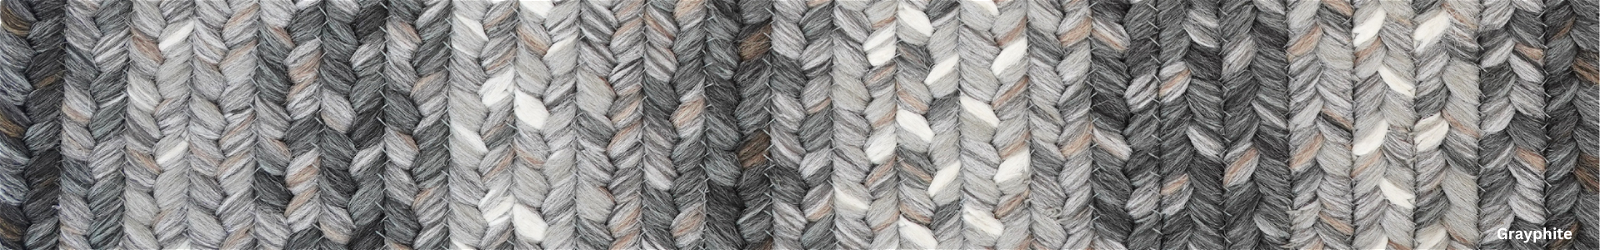 10 x 10 - 2.5 x 6' - Grey Braided Rugs